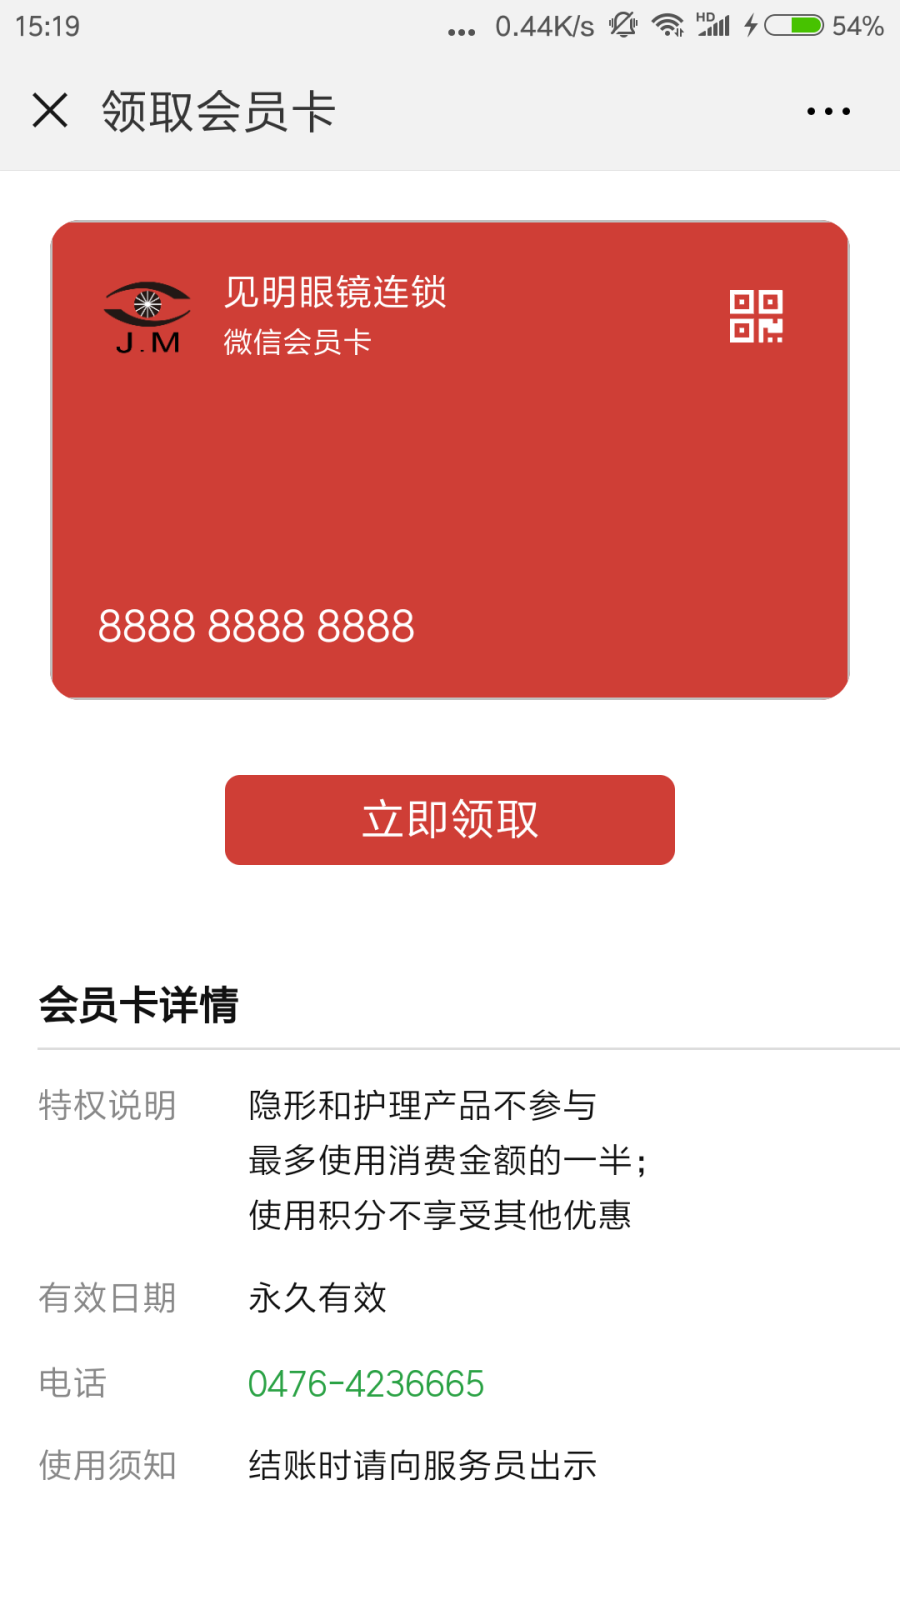 Screenshot_2018-08-27-15-19-12-323_com.tencent.mm.png